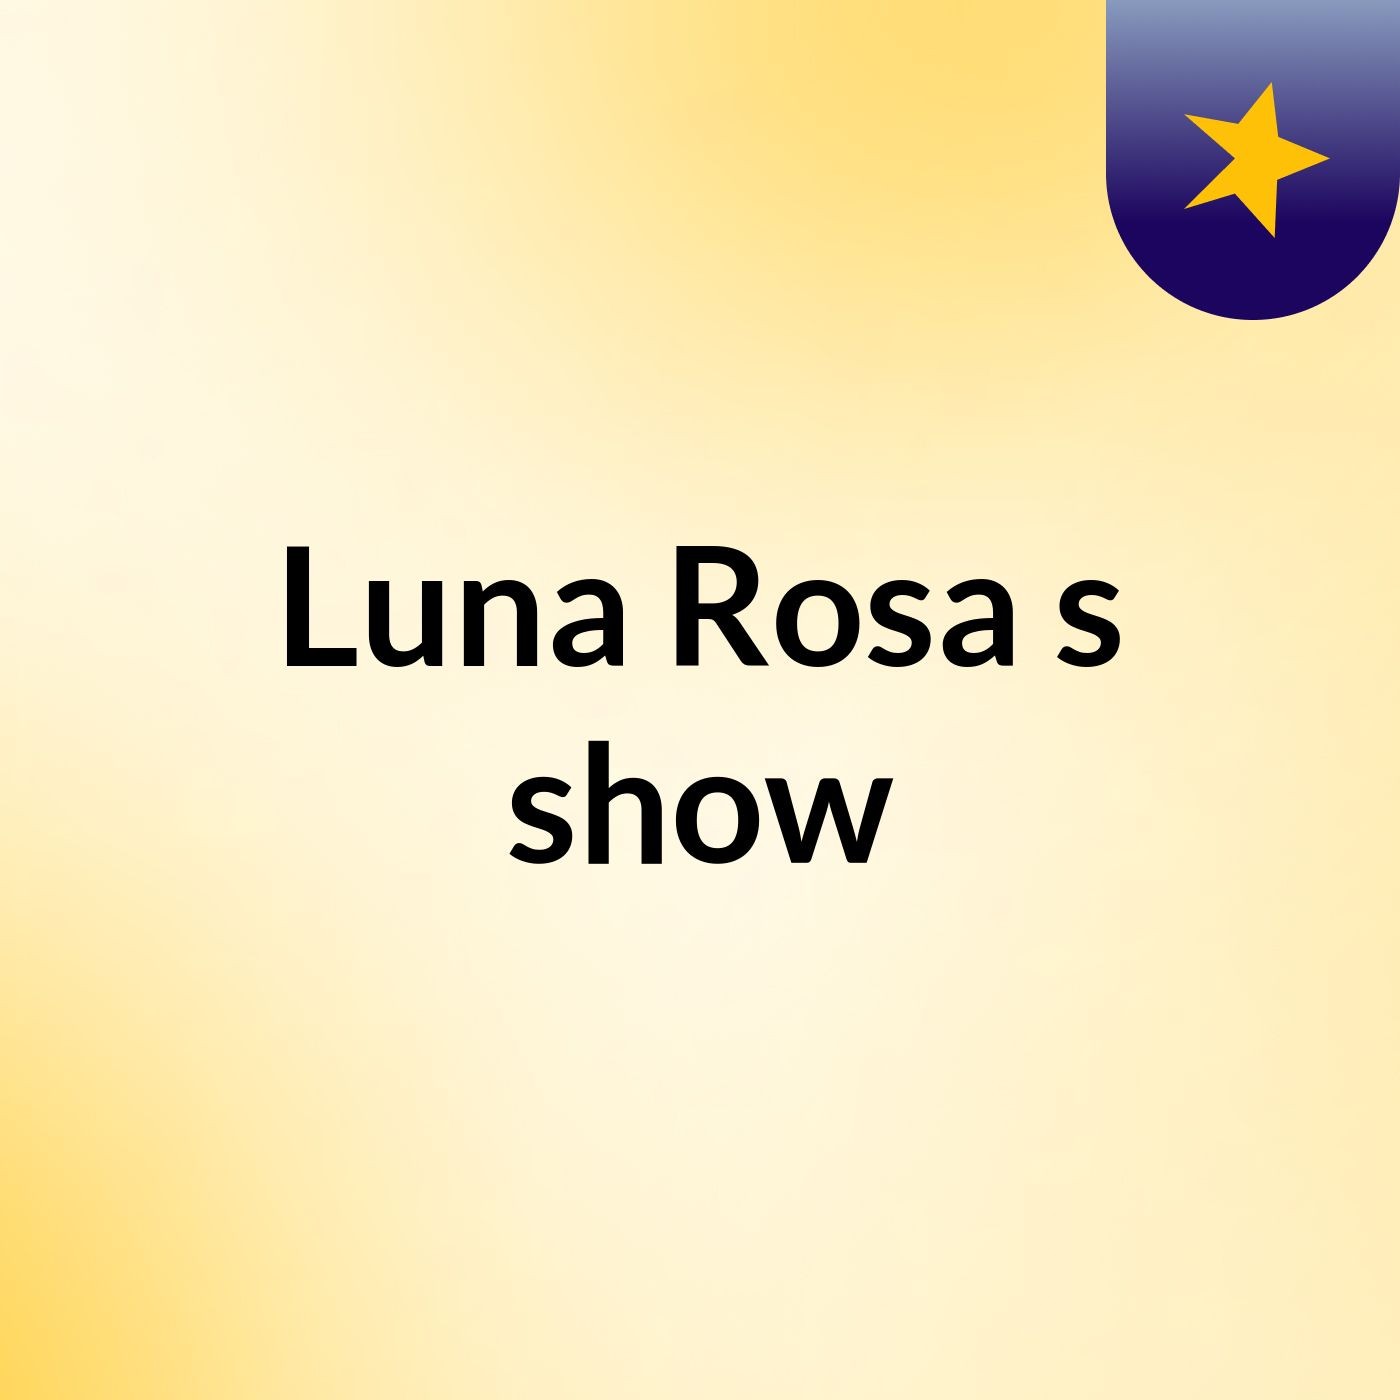 Luna Rosa's show